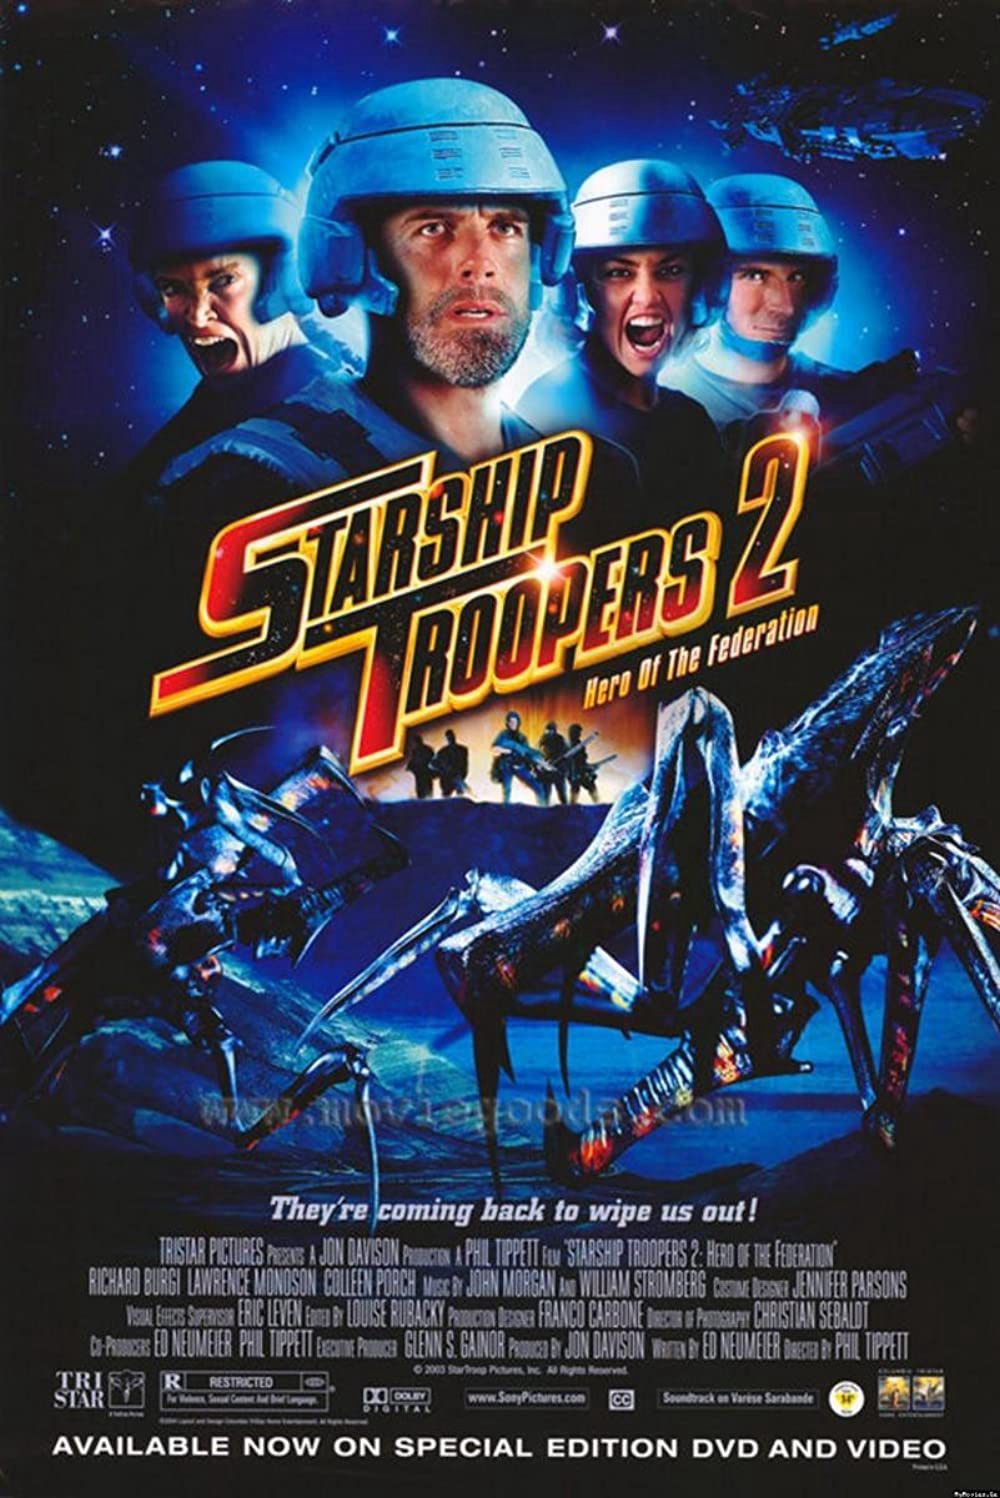 Poster Phim Nhện Khổng Lồ 2: Anh Hùng Của Liên Bang (Starship Troopers 2: Hero of the Federation)